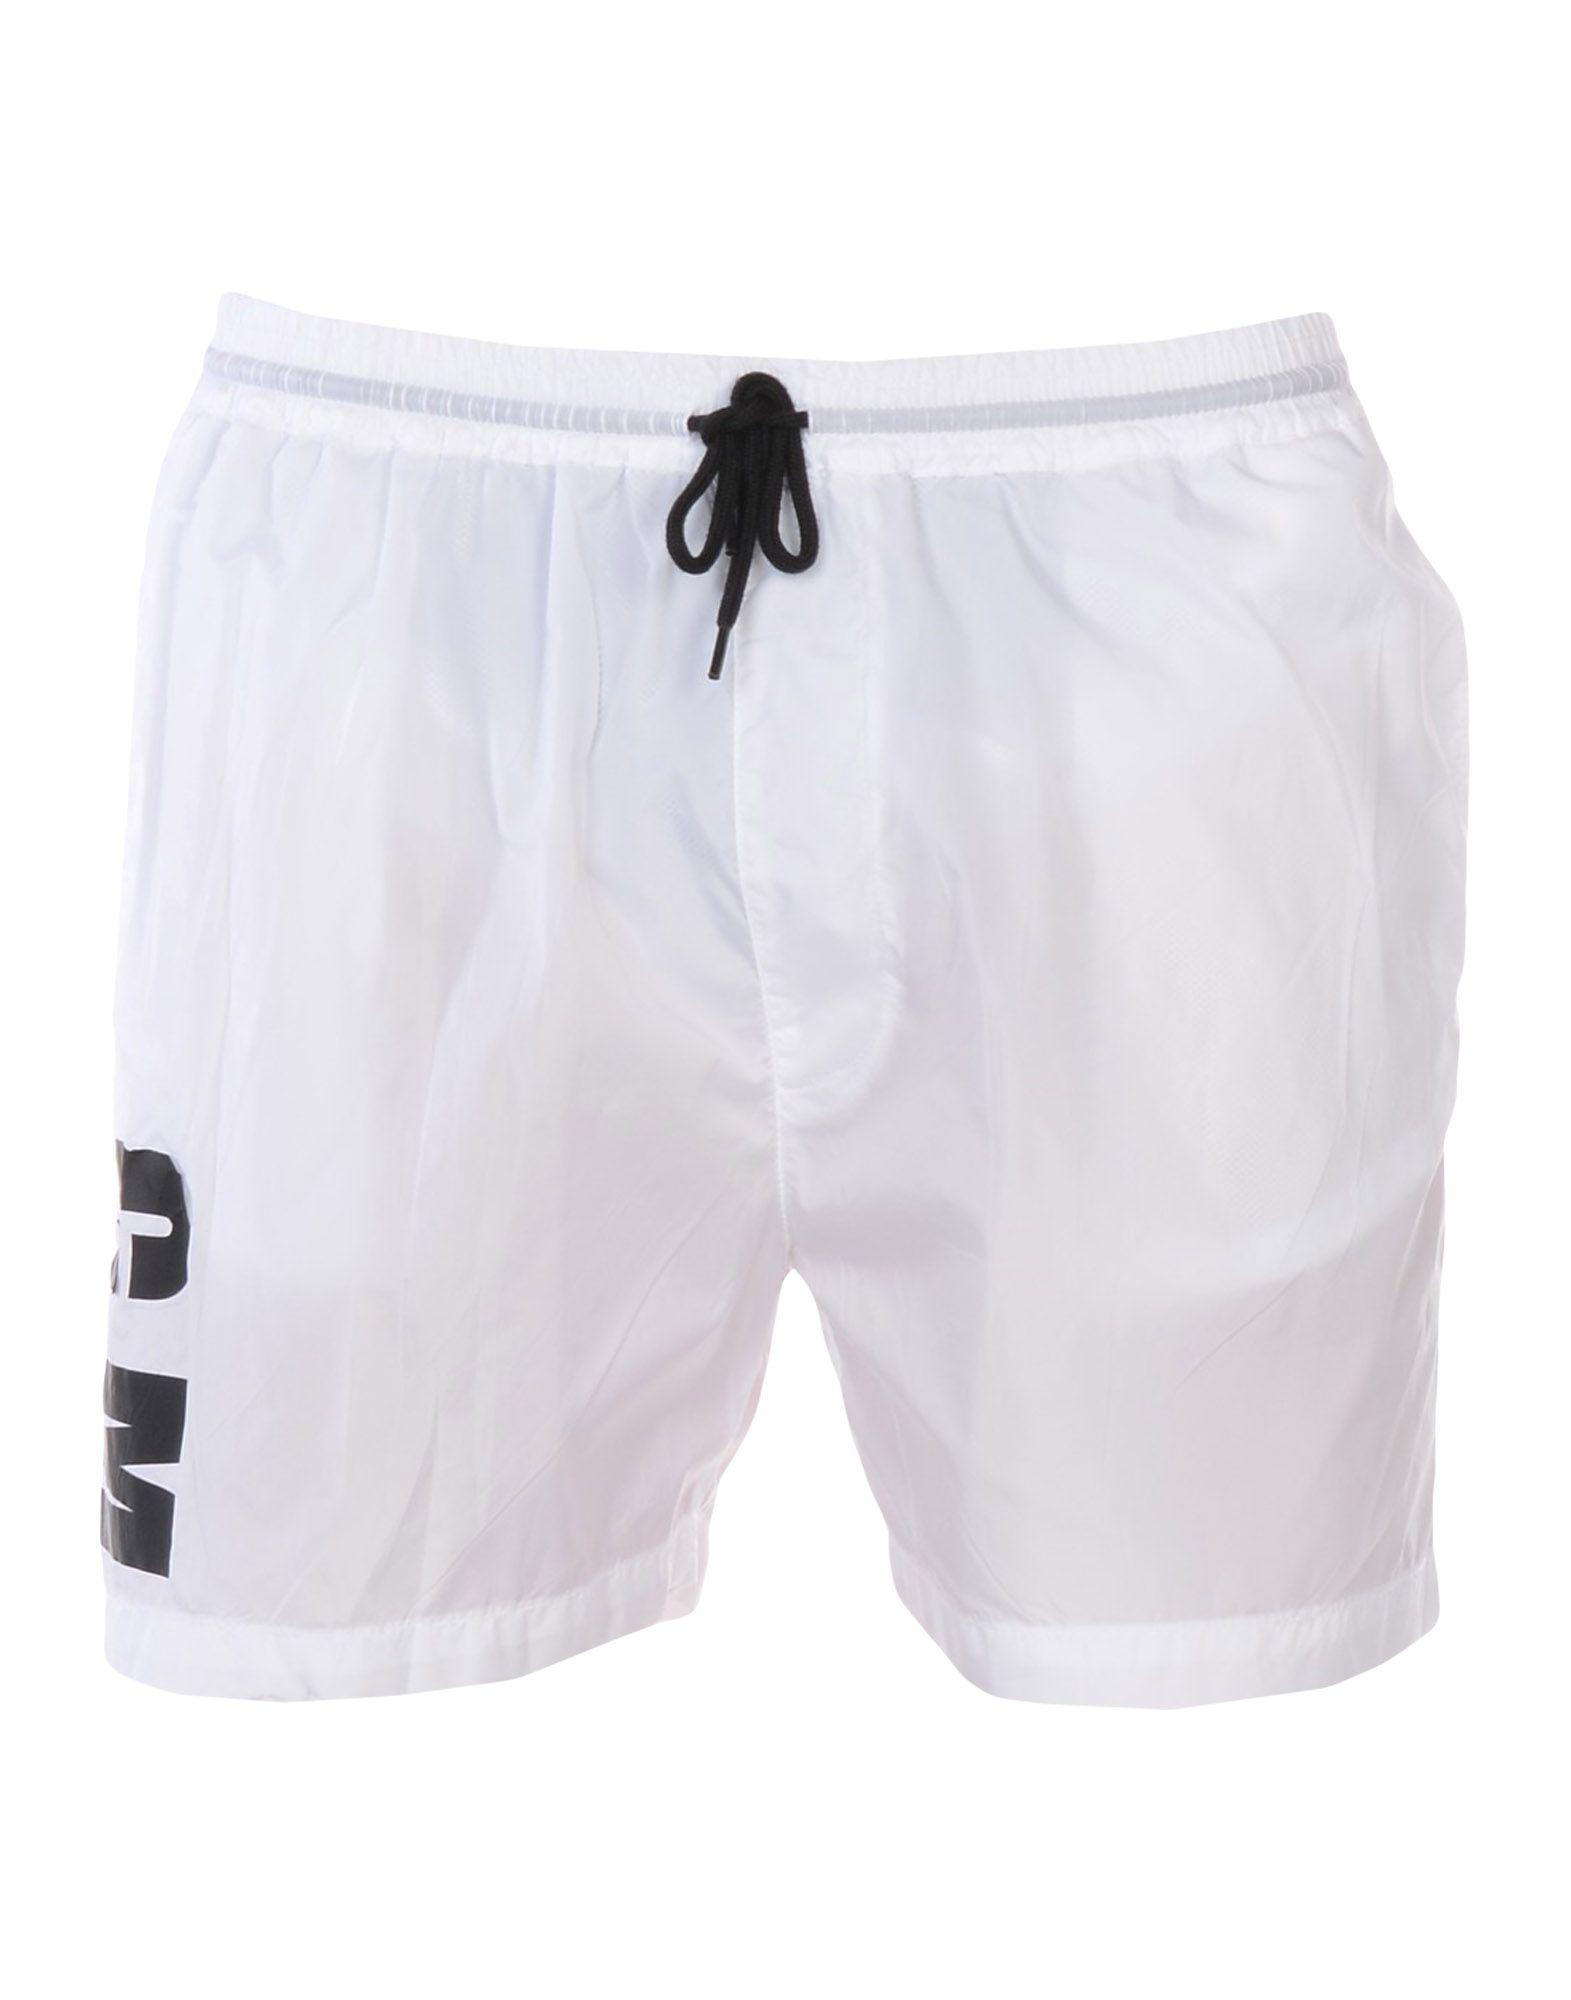 MSGM Synthetic Swim Trunks in White for Men - Lyst